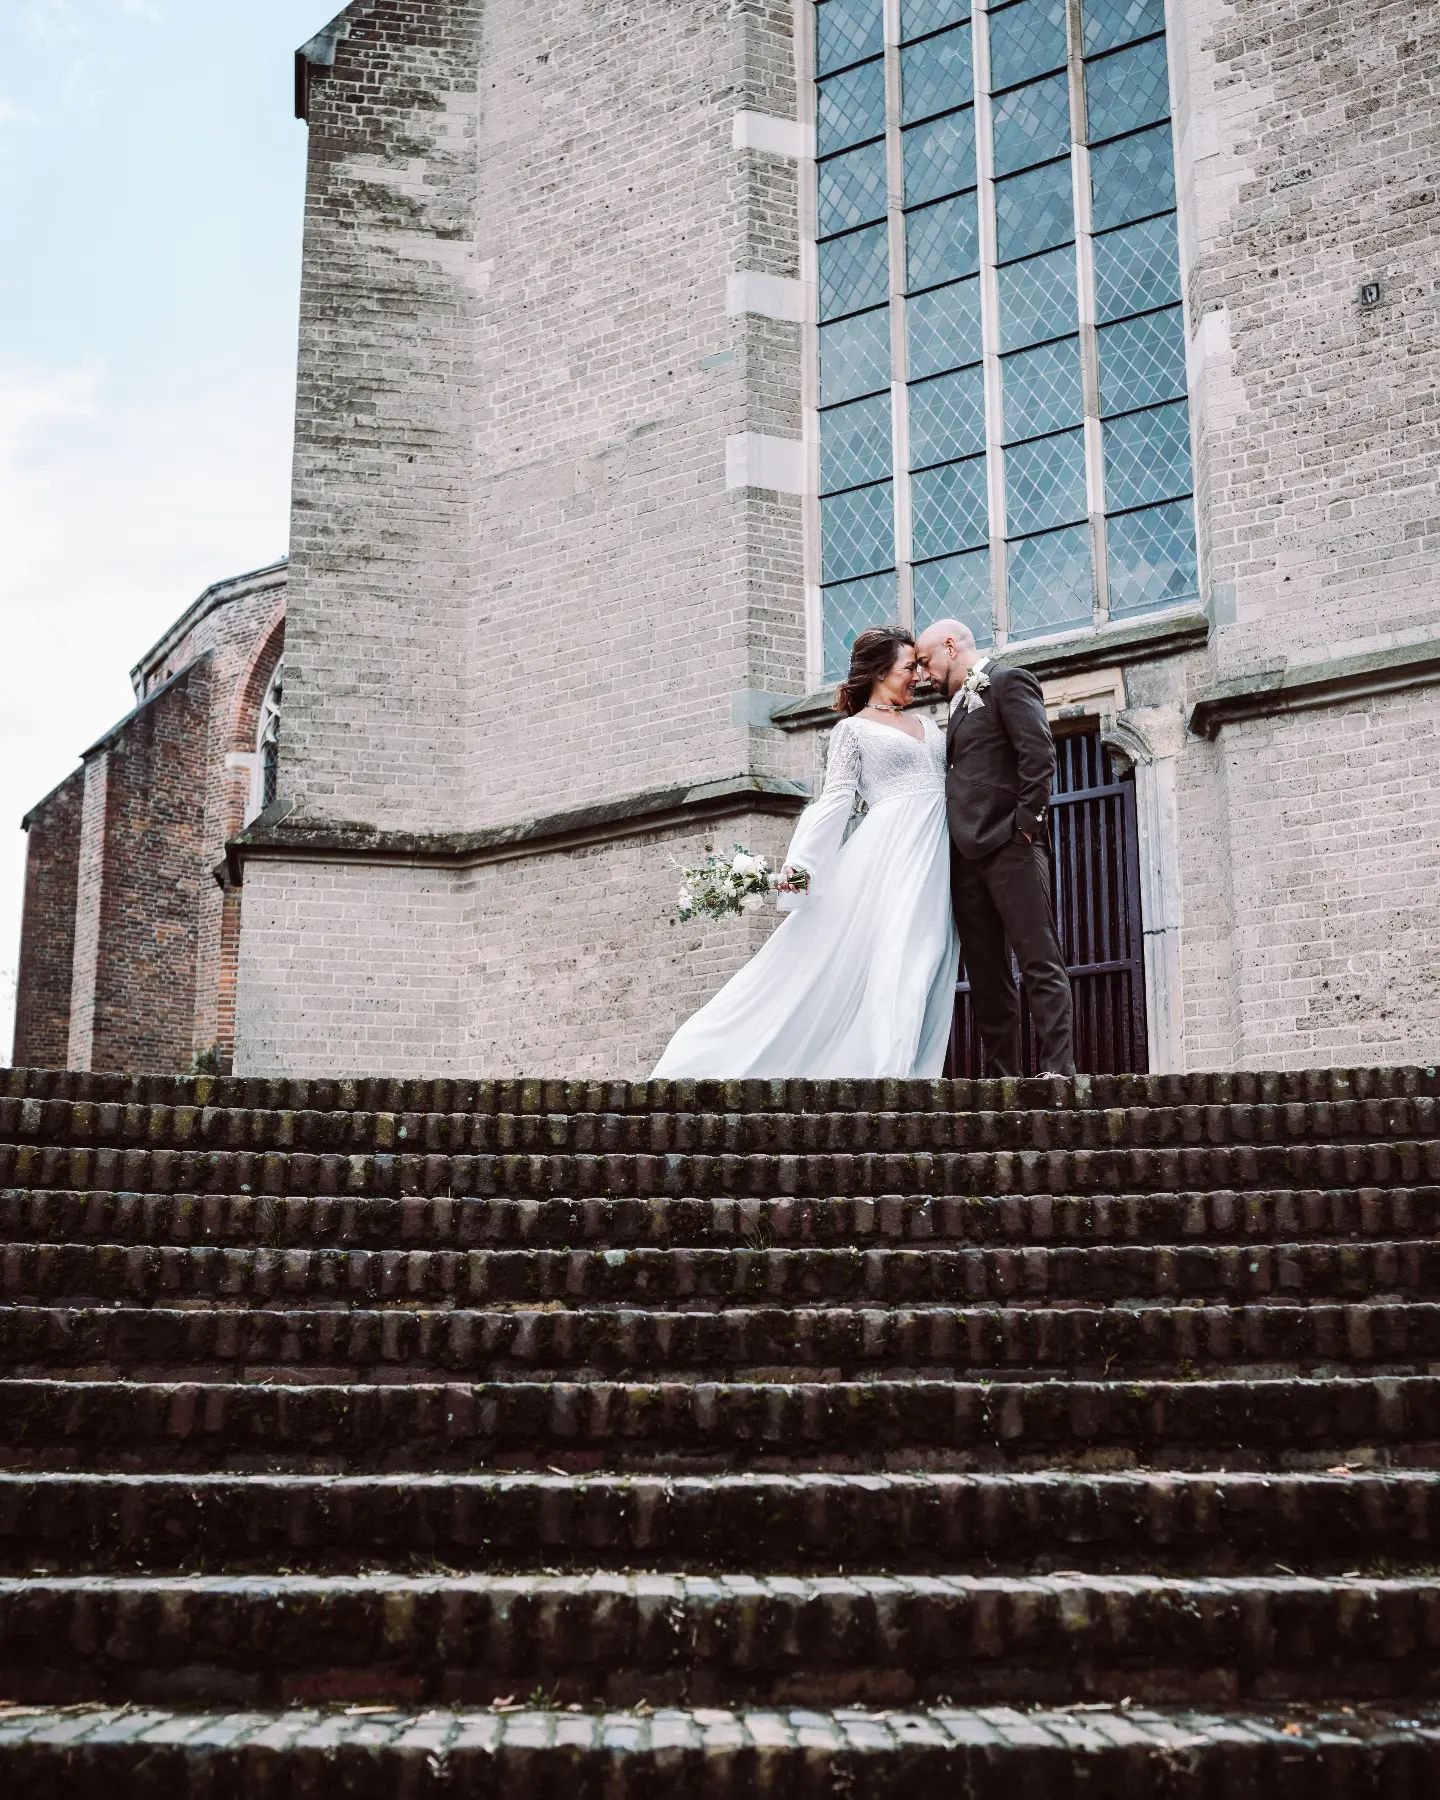 Deze bruiloft was geweldig en ik heb zulke mooie foto's hiervan 🙏🏻💍
Er komen meer aan 📸 hou mijn Instagram in de gaten 😎

#trouwenin2024 #trouwenin2025 #trouwfotografie #TrouwFotograaf #trouwen #bruiloft #bruidsfotograaf #overijssel #gelderland 